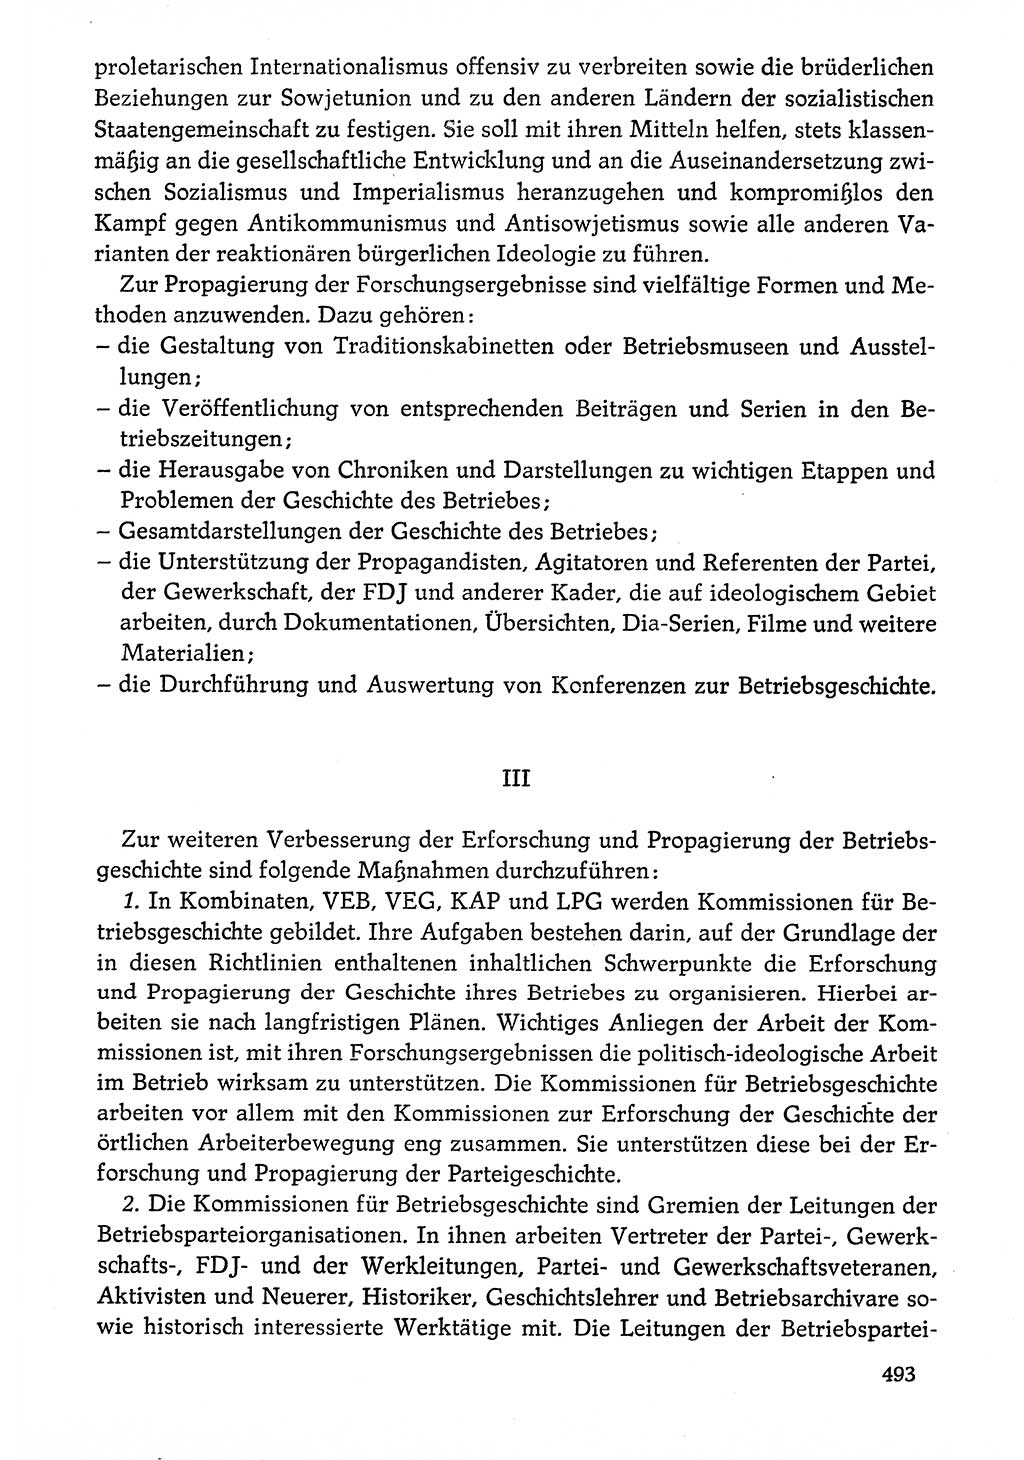 Dokumente der Sozialistischen Einheitspartei Deutschlands (SED) [Deutsche Demokratische Republik (DDR)] 1976-1977, Seite 493 (Dok. SED DDR 1976-1977, S. 493)